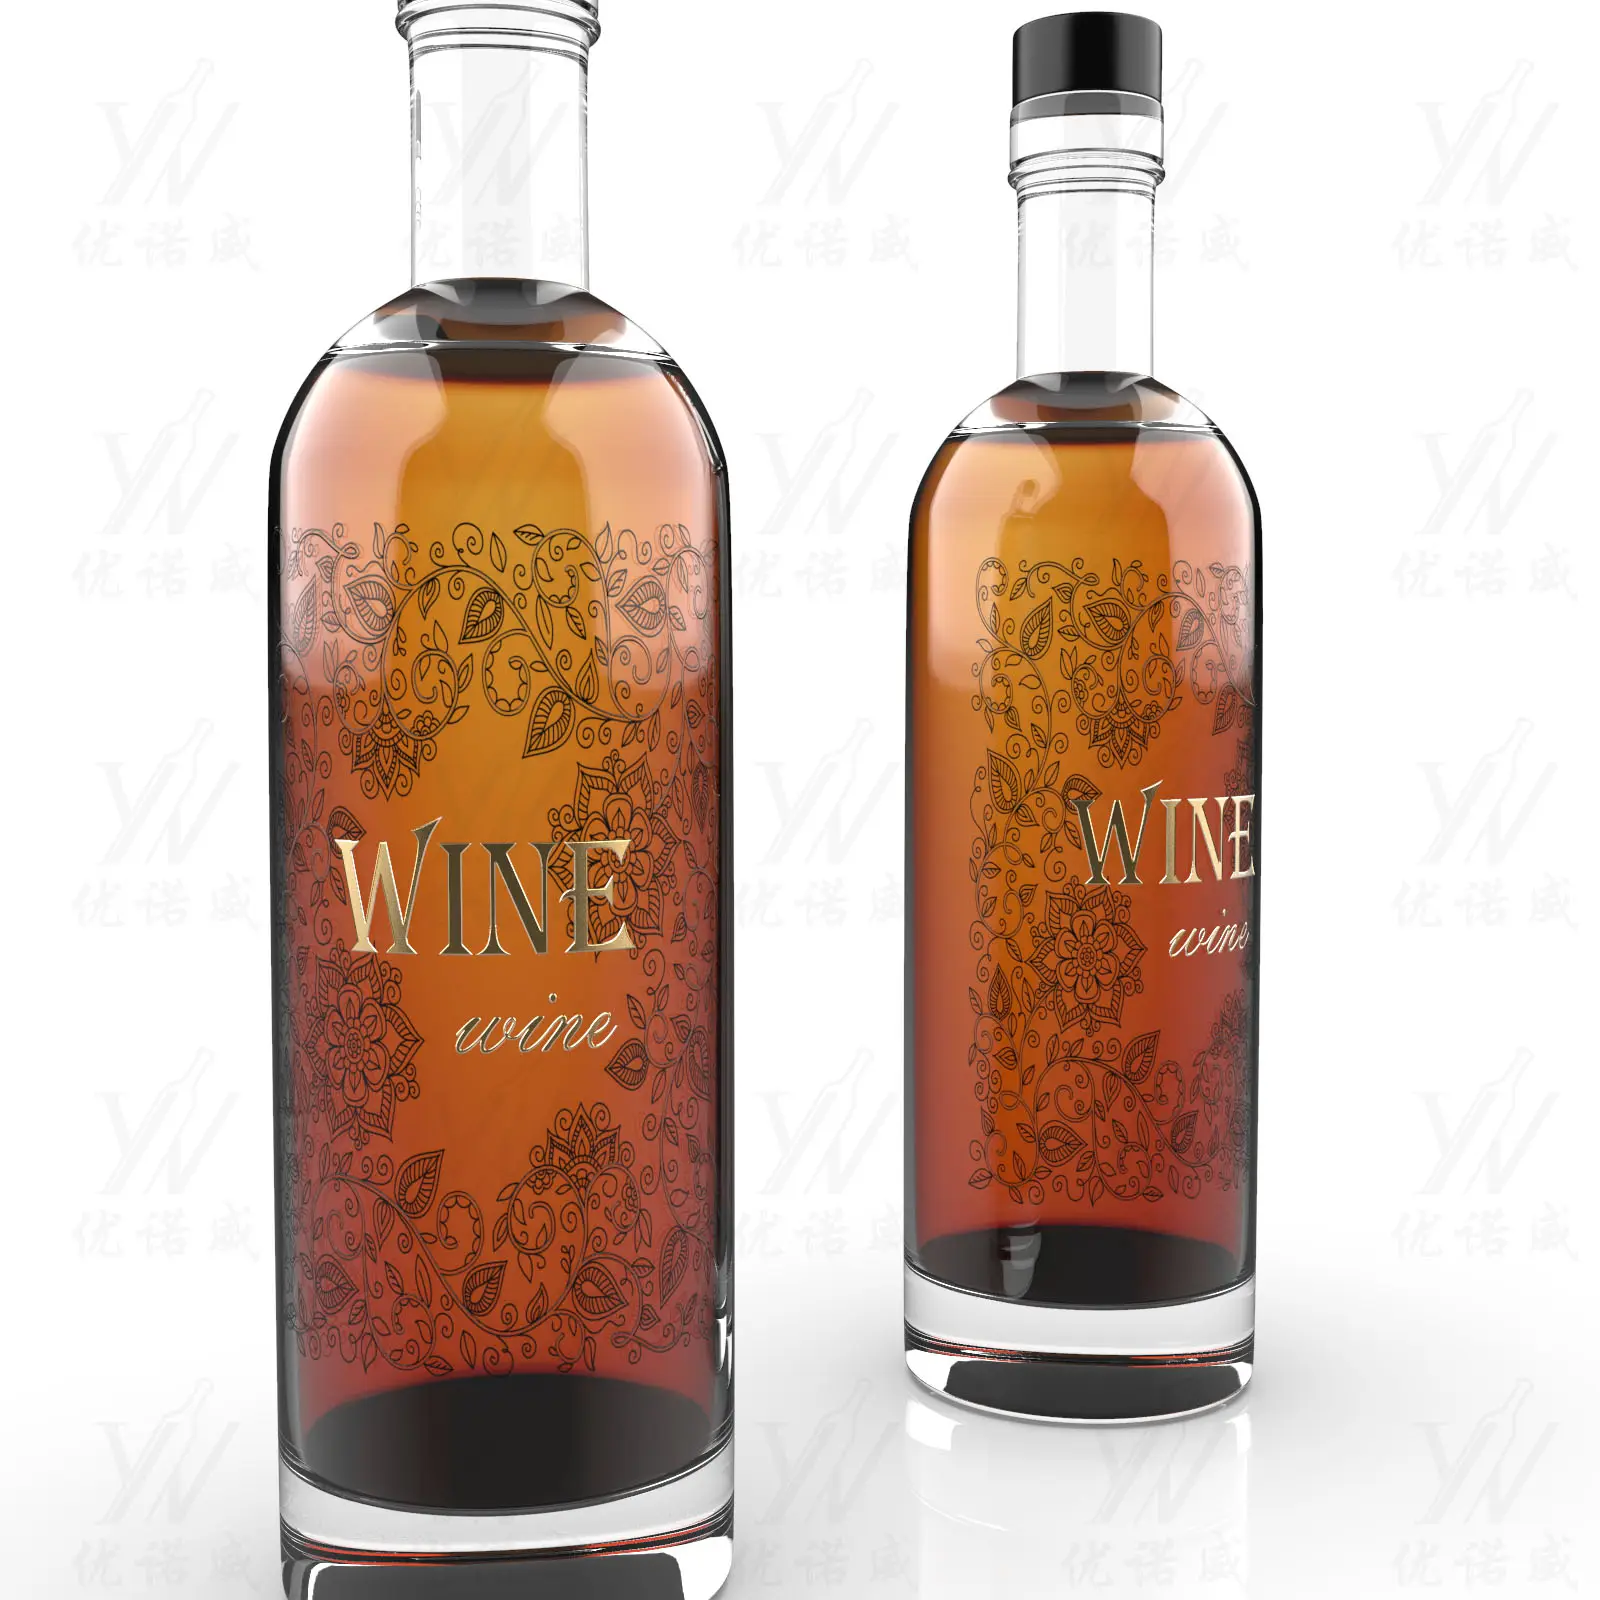 Toptan özel logo boş 375ml 500ml 700ml 750ml 1000ml votka viski Tequila Rum likörü şarap şişesi